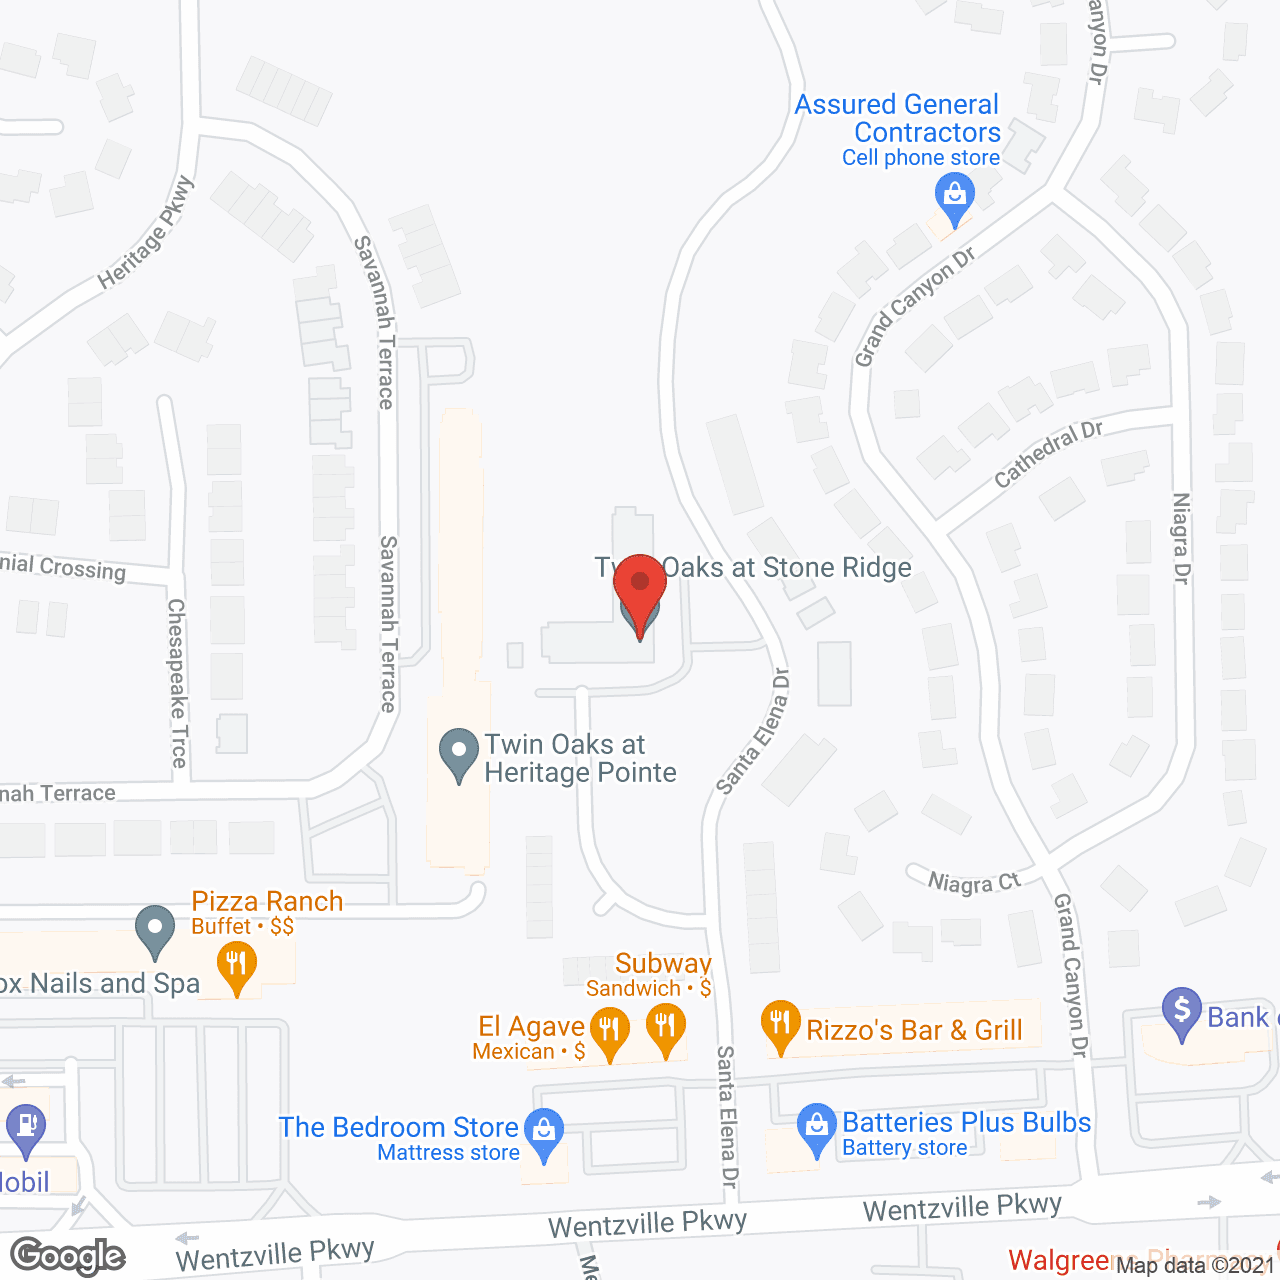 Twin Oaks at Stone Ridge in google map